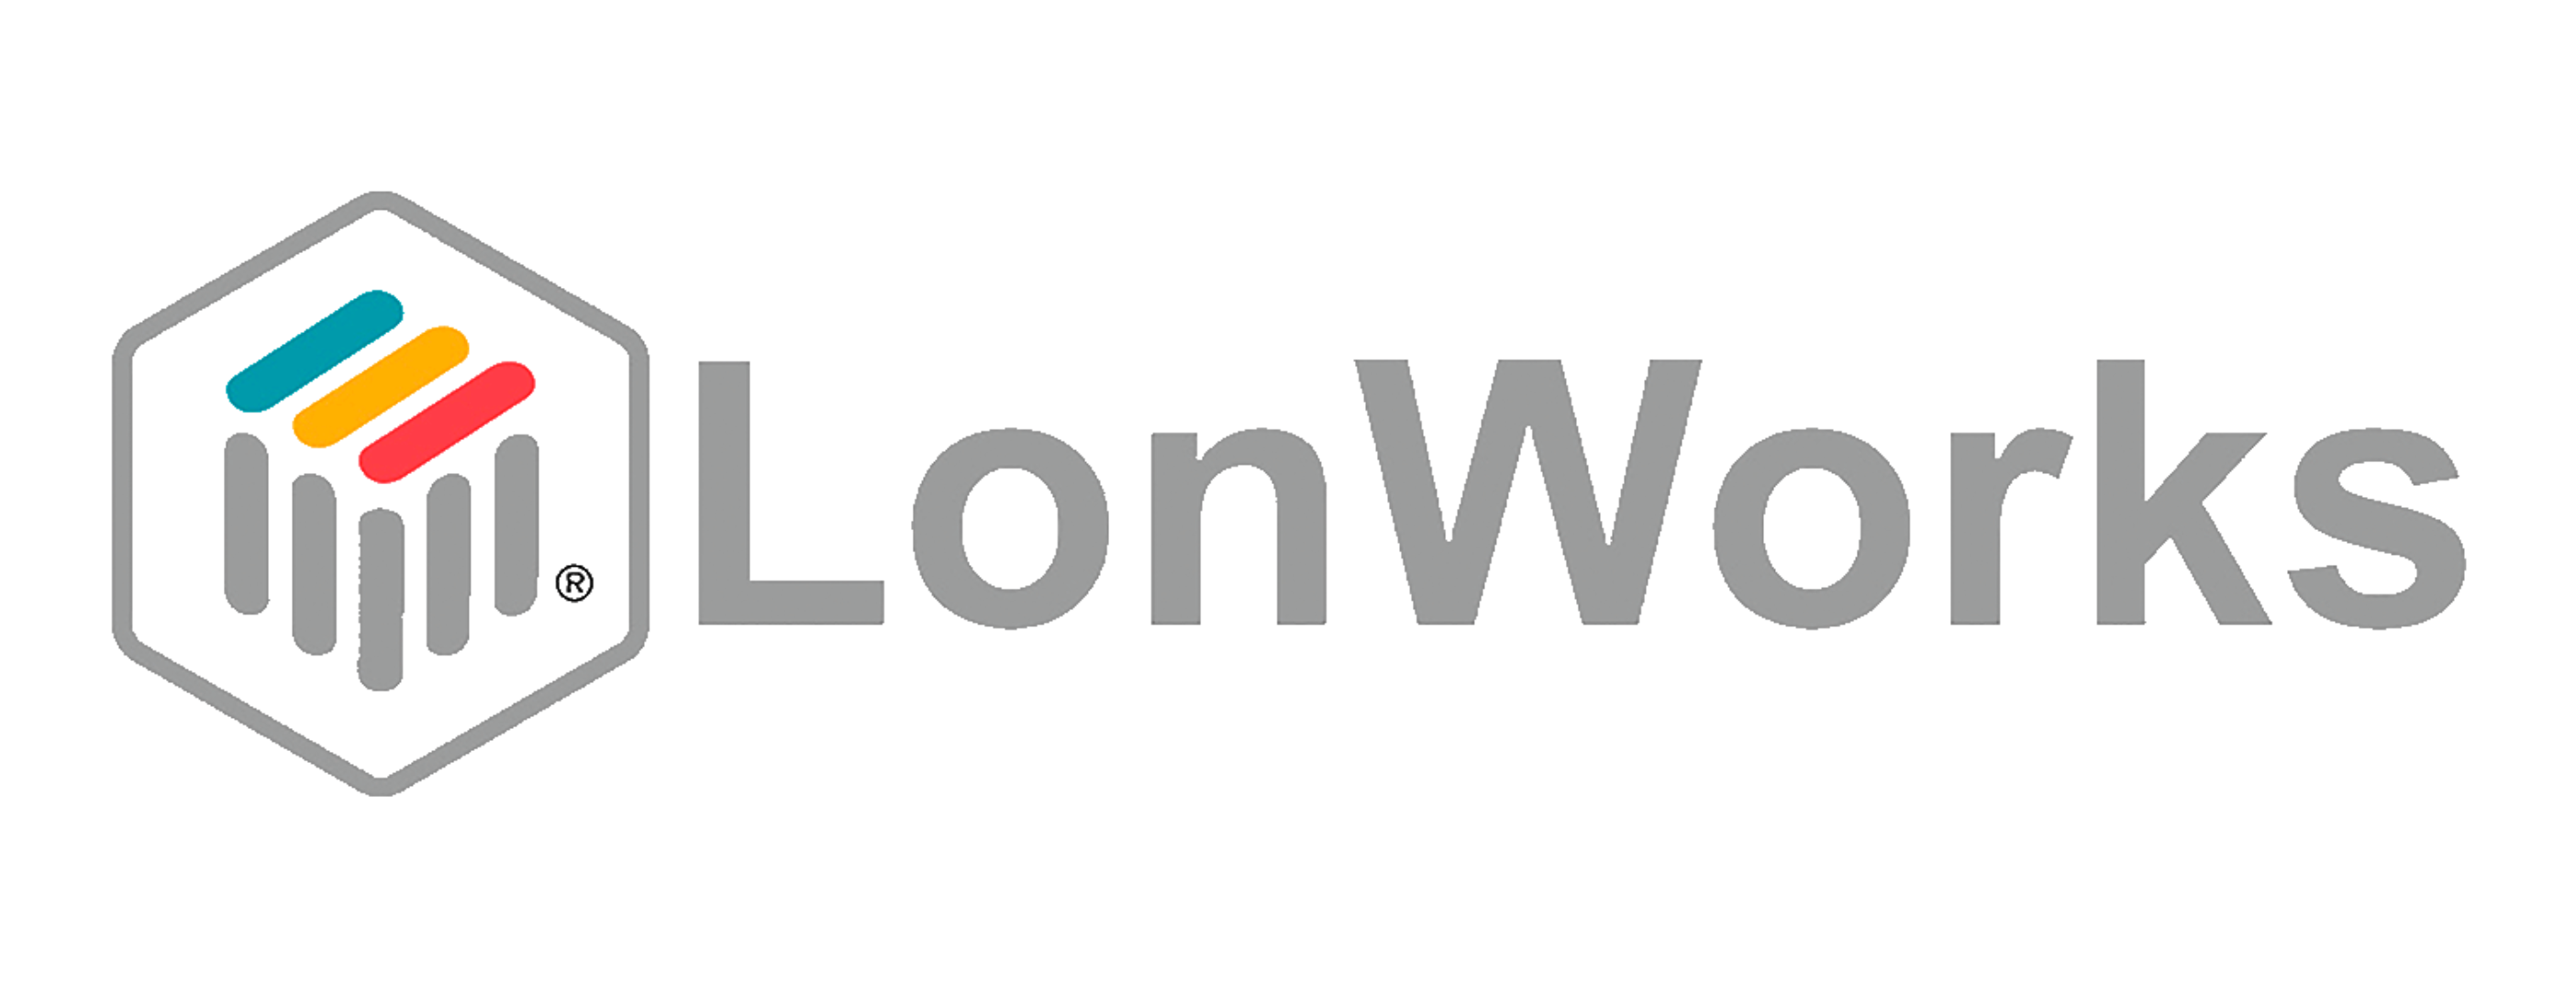 LonWorks protocol for building management